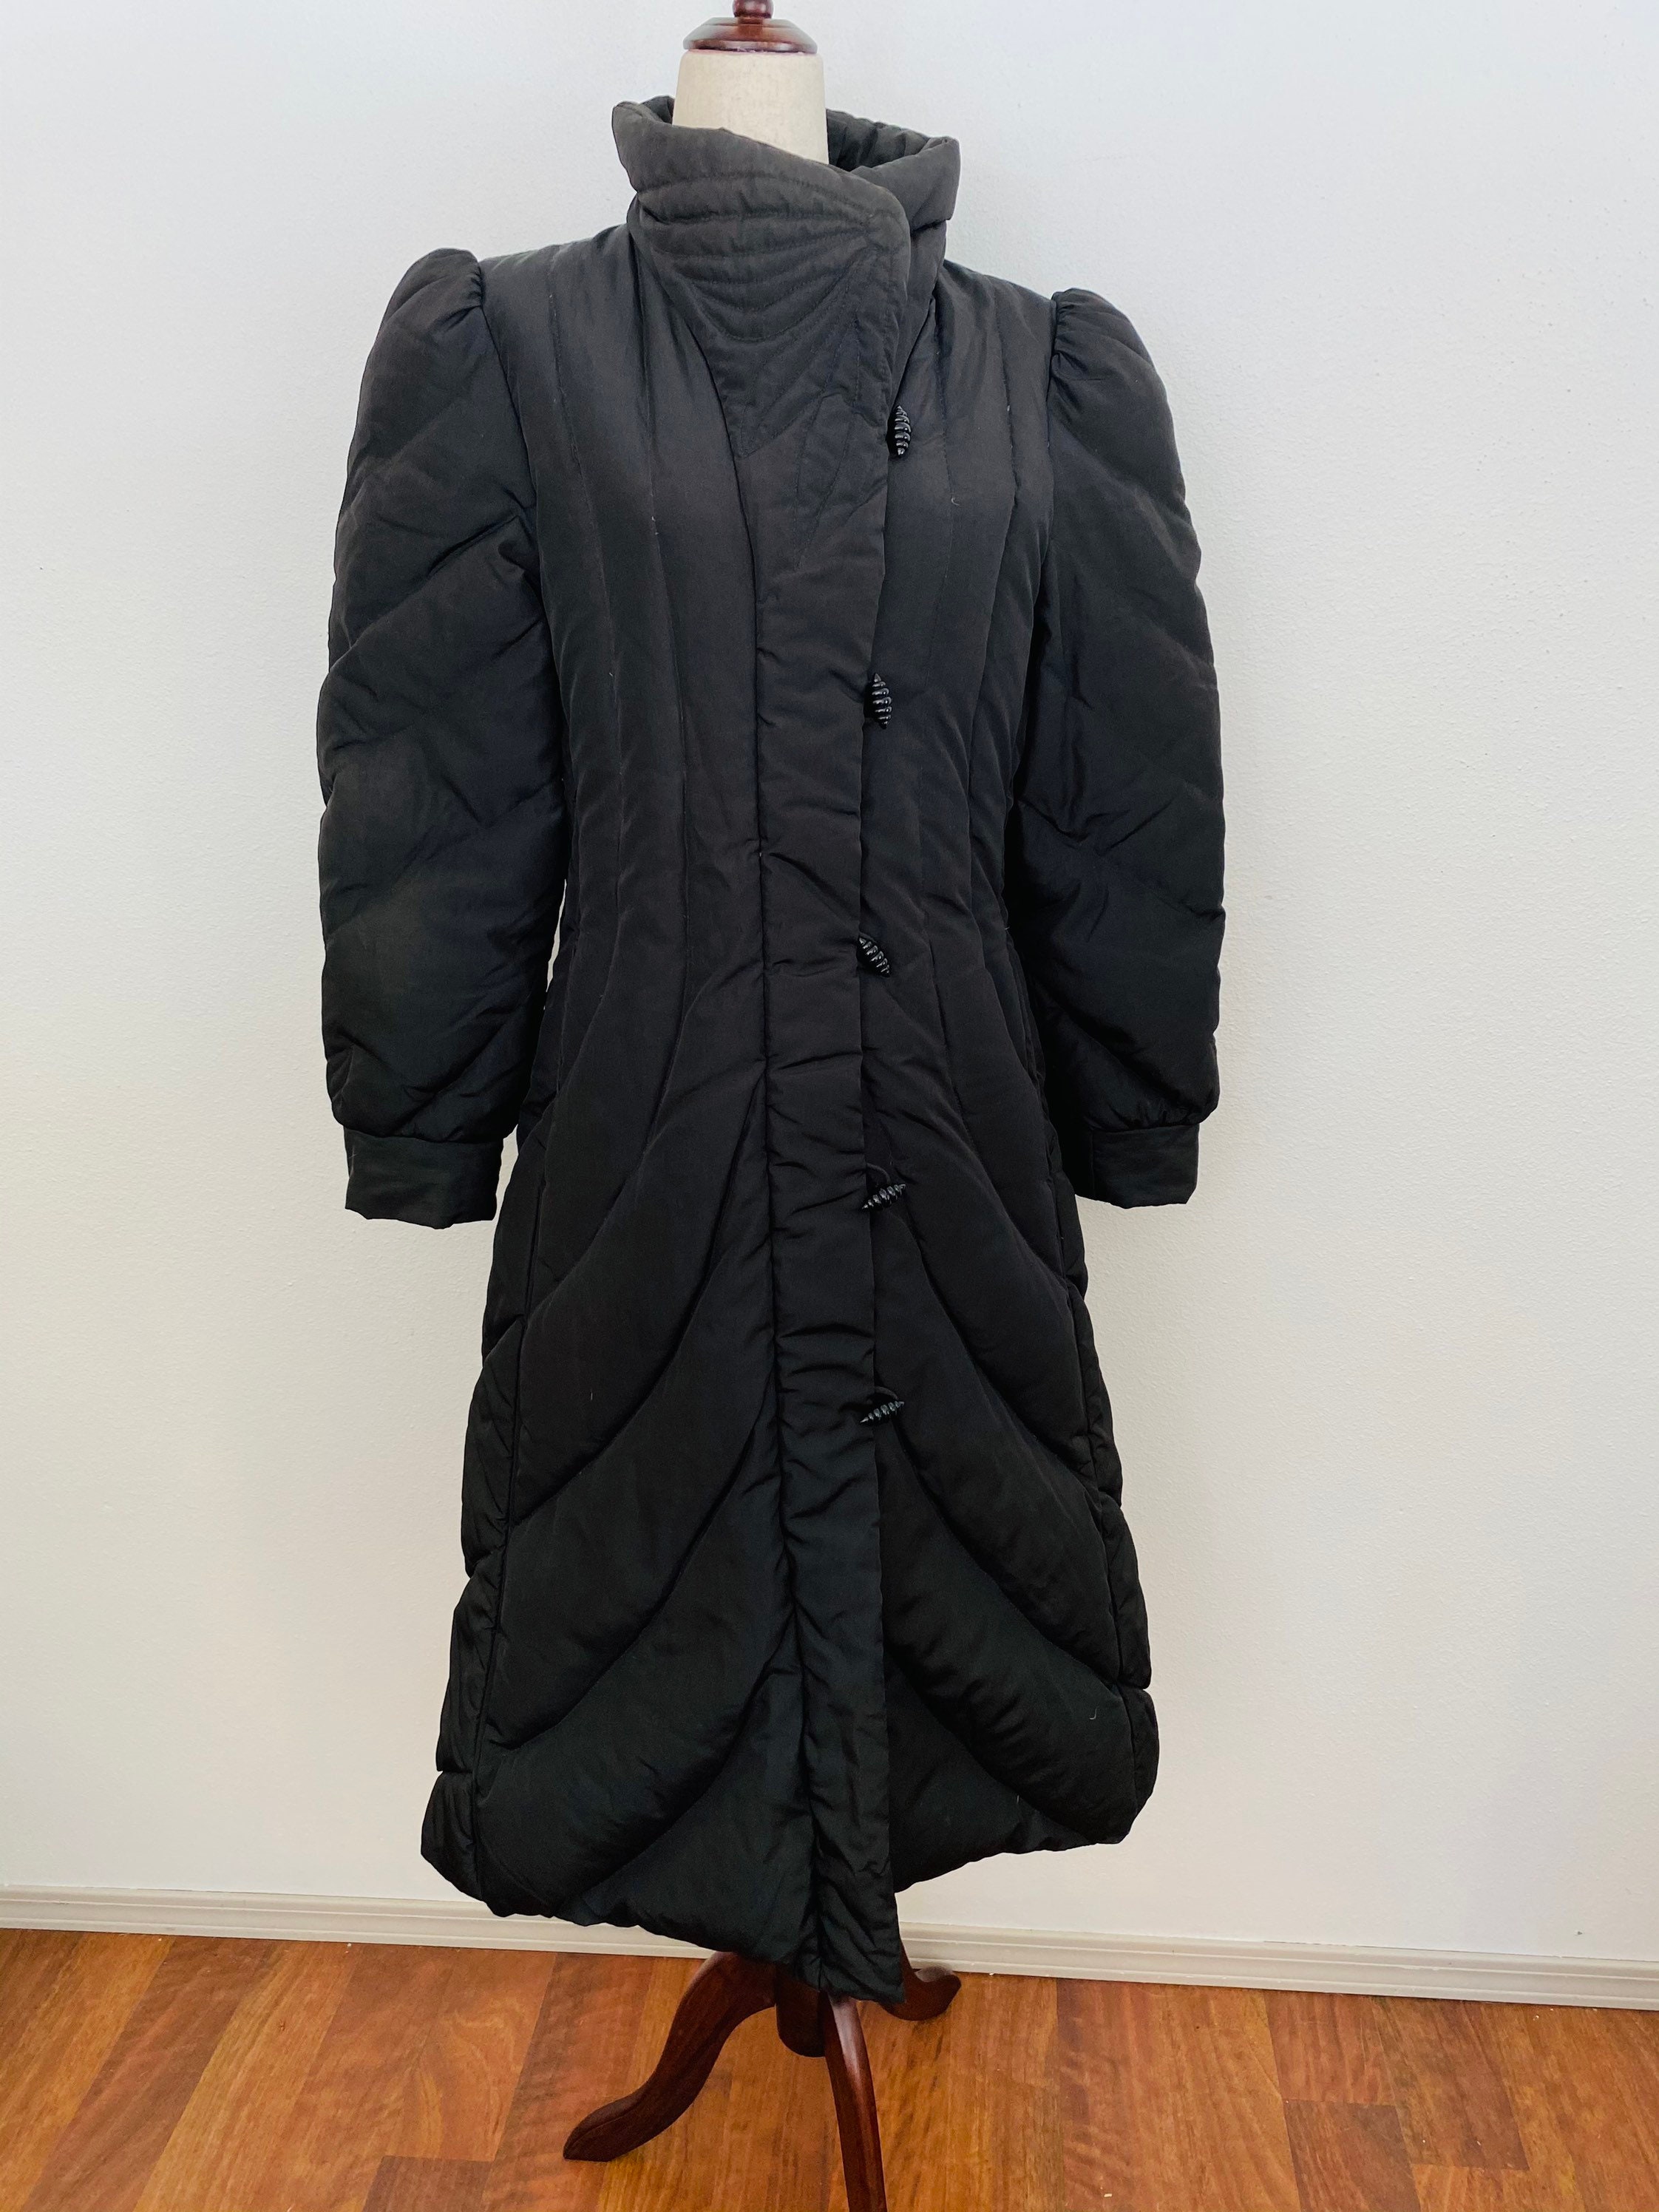 J Gallery Sleeping Bag Coat. Black Real Down Quilted Coat. -  Norway